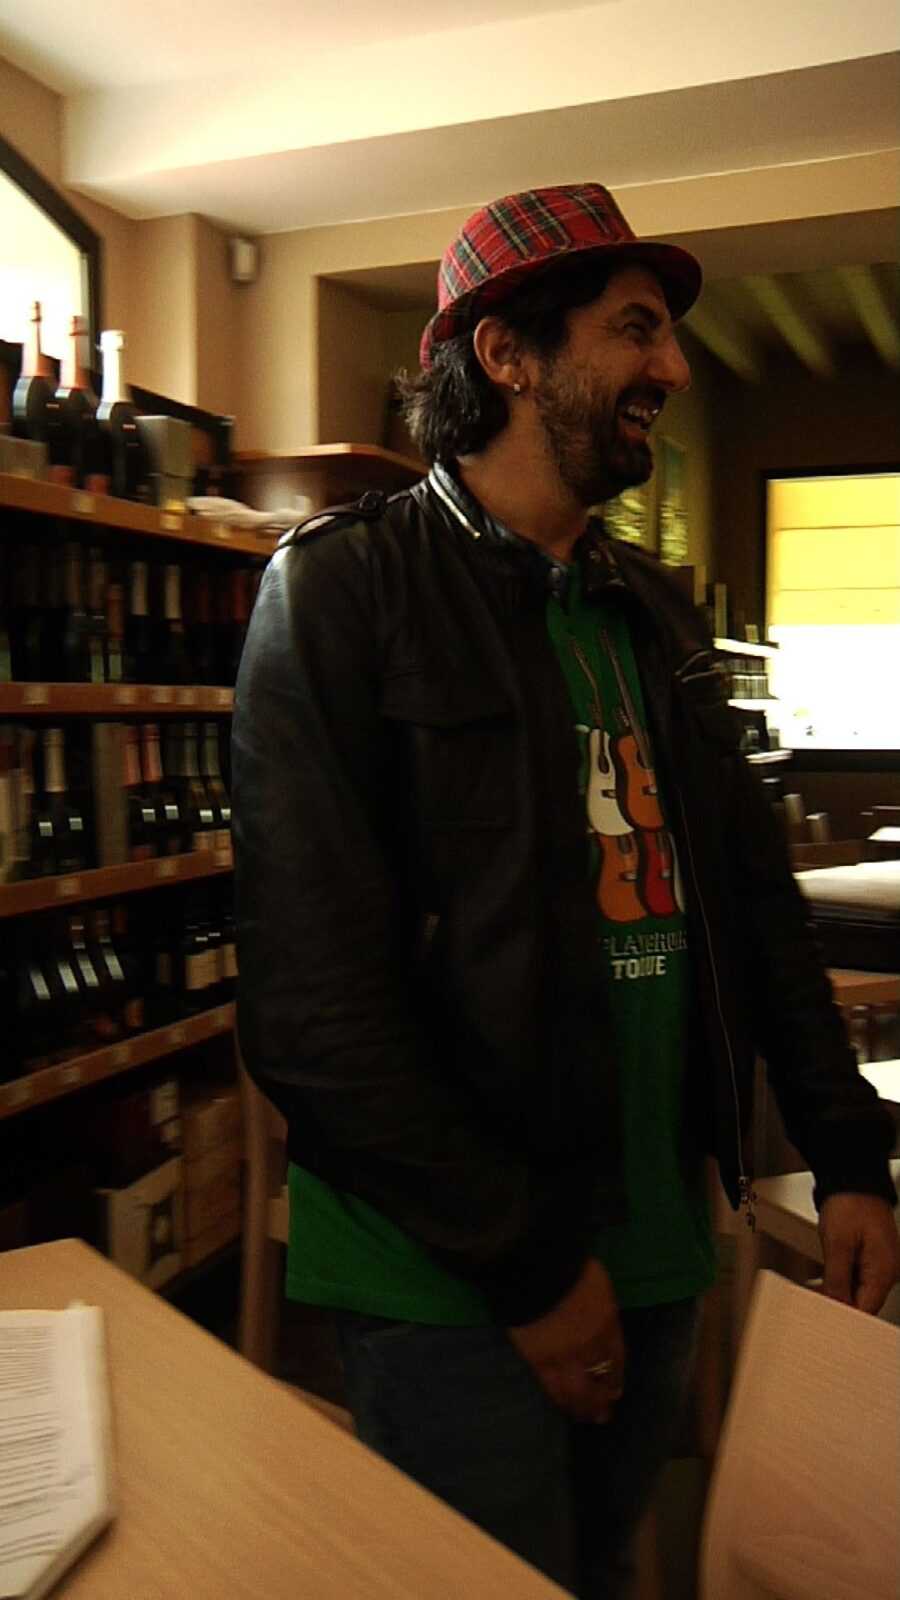 Omar Pedrini e Riccardo Rossi nella nuova puntata in Franciacorta di "Conosco un posticino" su DoveTv | Digitale terrestre: Dtti.it